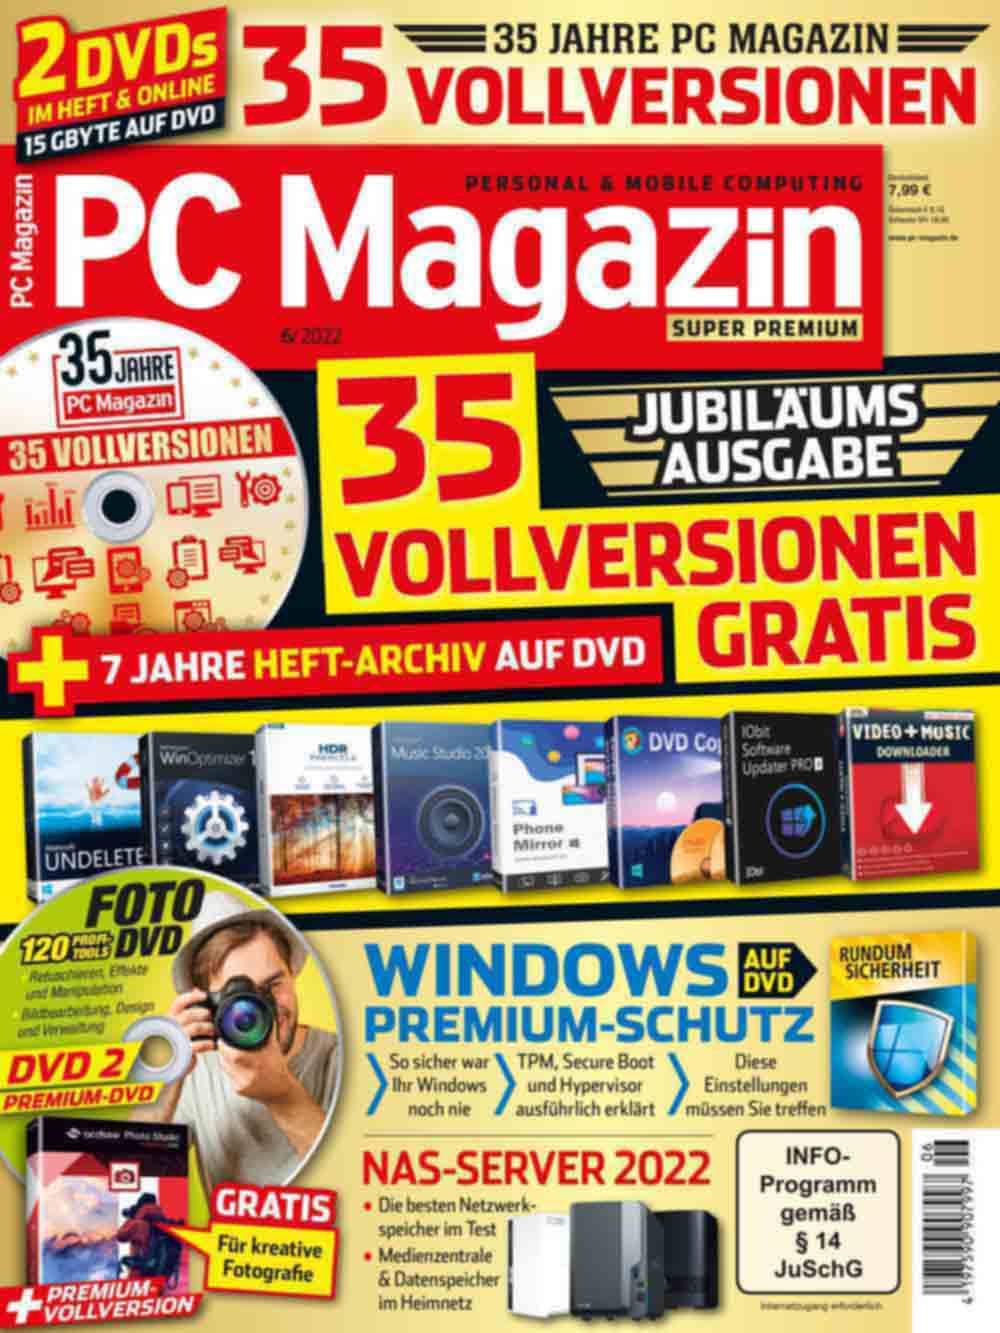 35 Jahre PC Magazin, pralles Software Paket krönt Jubiläum 2022